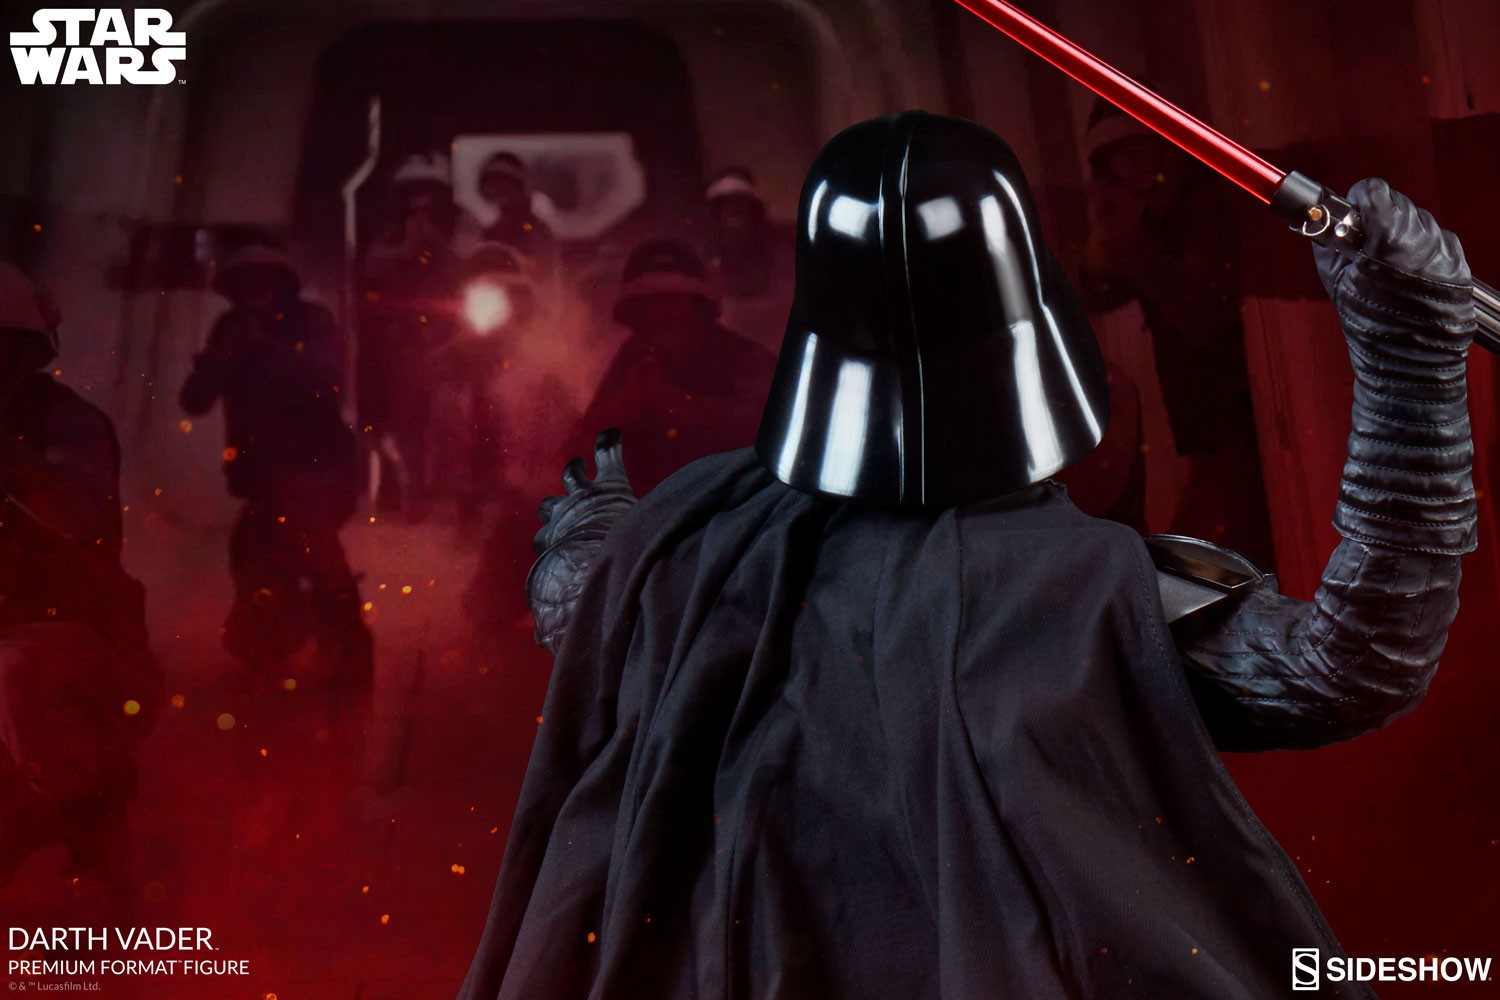 Darth Vader Exclusive Edition View 29